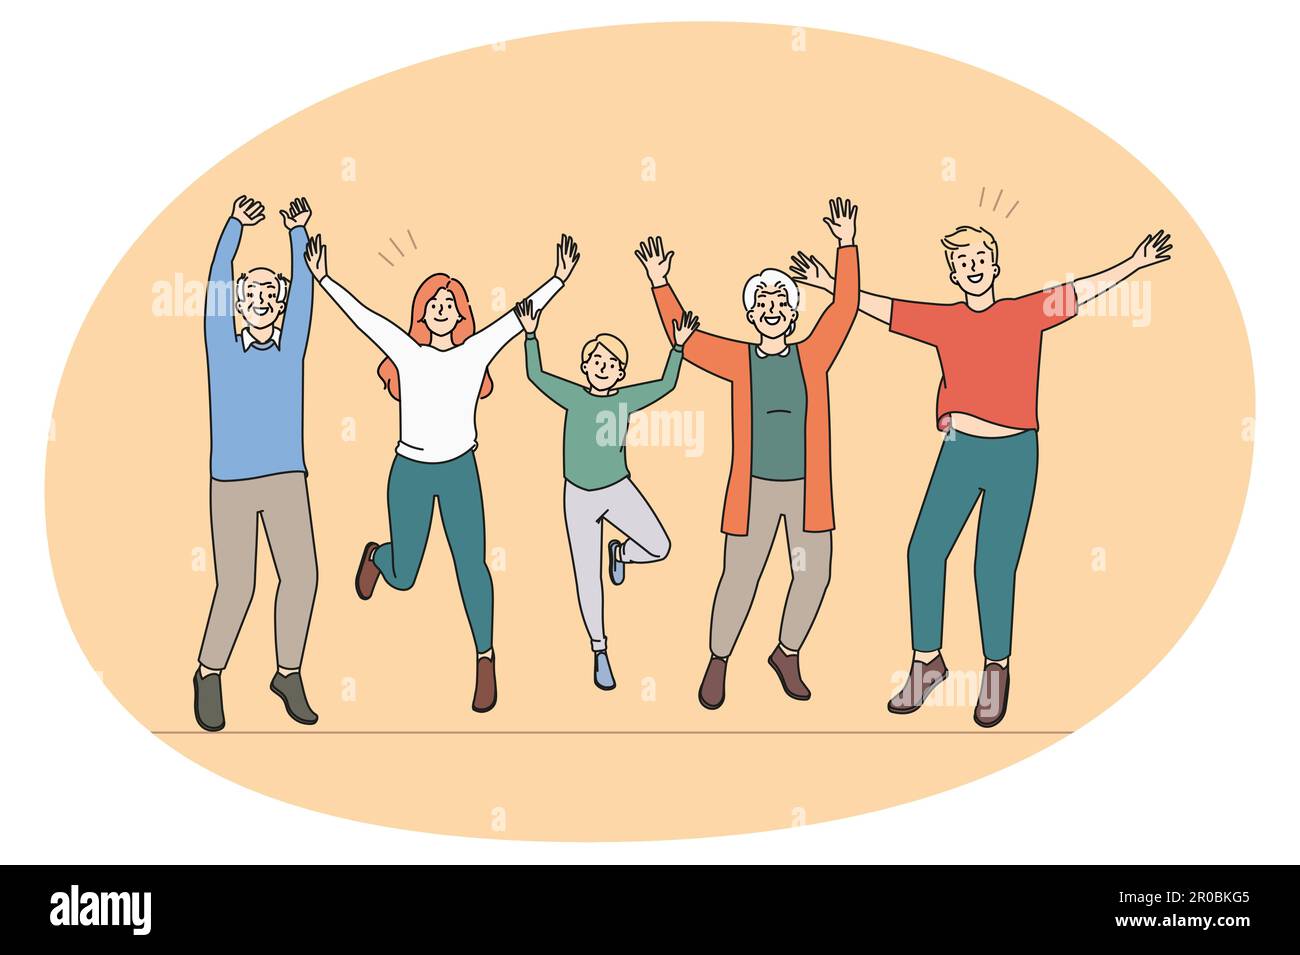 Überglücklich drei Generationen von Familie haben Spaß springen und lachen zusammen. Lächelnde Kinder, Eltern und Großeltern feiern Erfolg Fühlen Sie sich fröhlich und aufgeregt. Flache Vektorgrafik. Stock Vektor